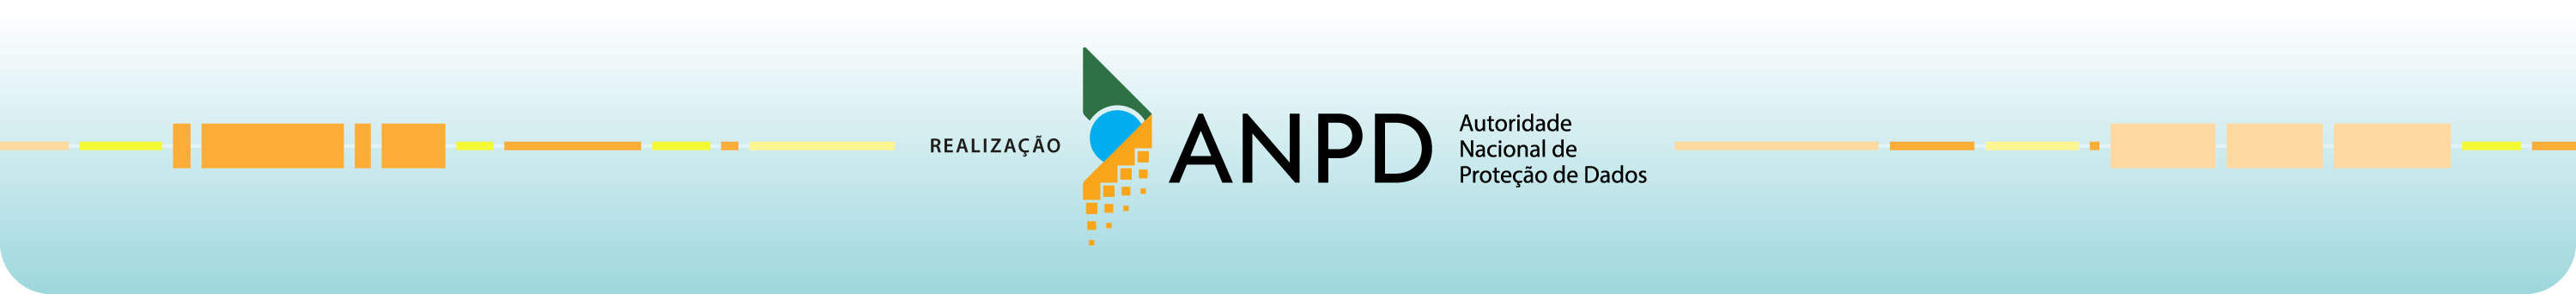 Realização ANPD - Autoridade Nacional de Proteção de Dados